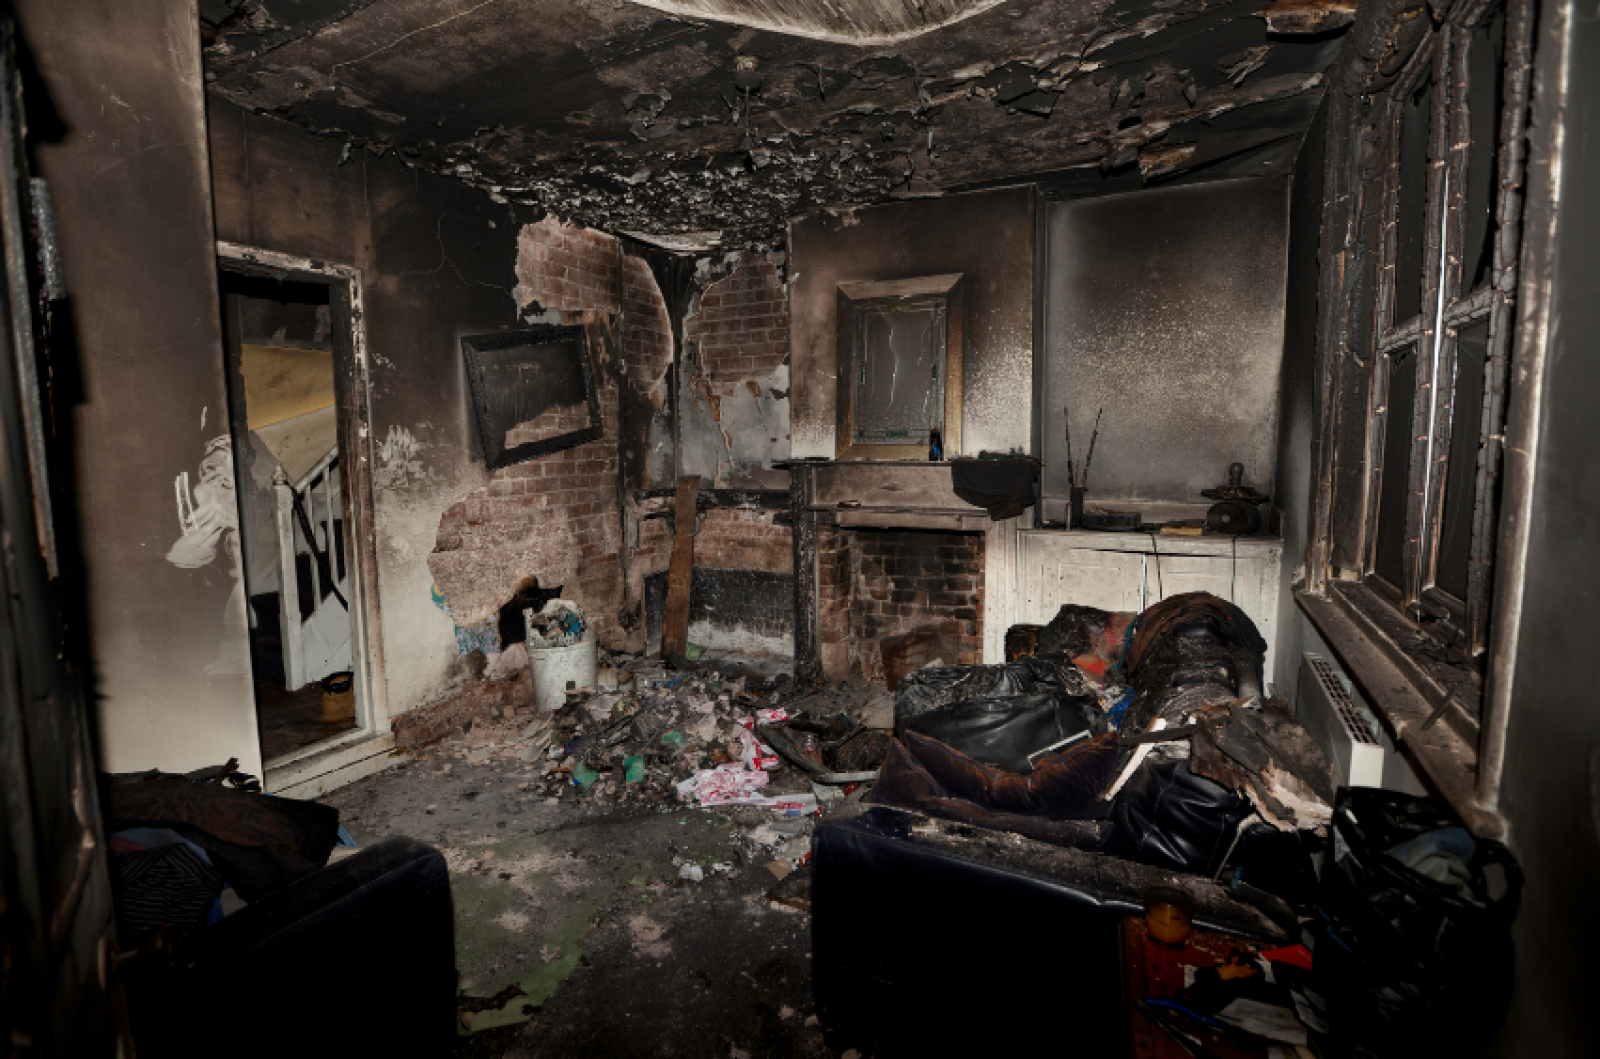 Katastrofalny efekt przeciążenia instalacji elektrycznej - pożar pomieszczenia. fot. MK Systemy Kominowe